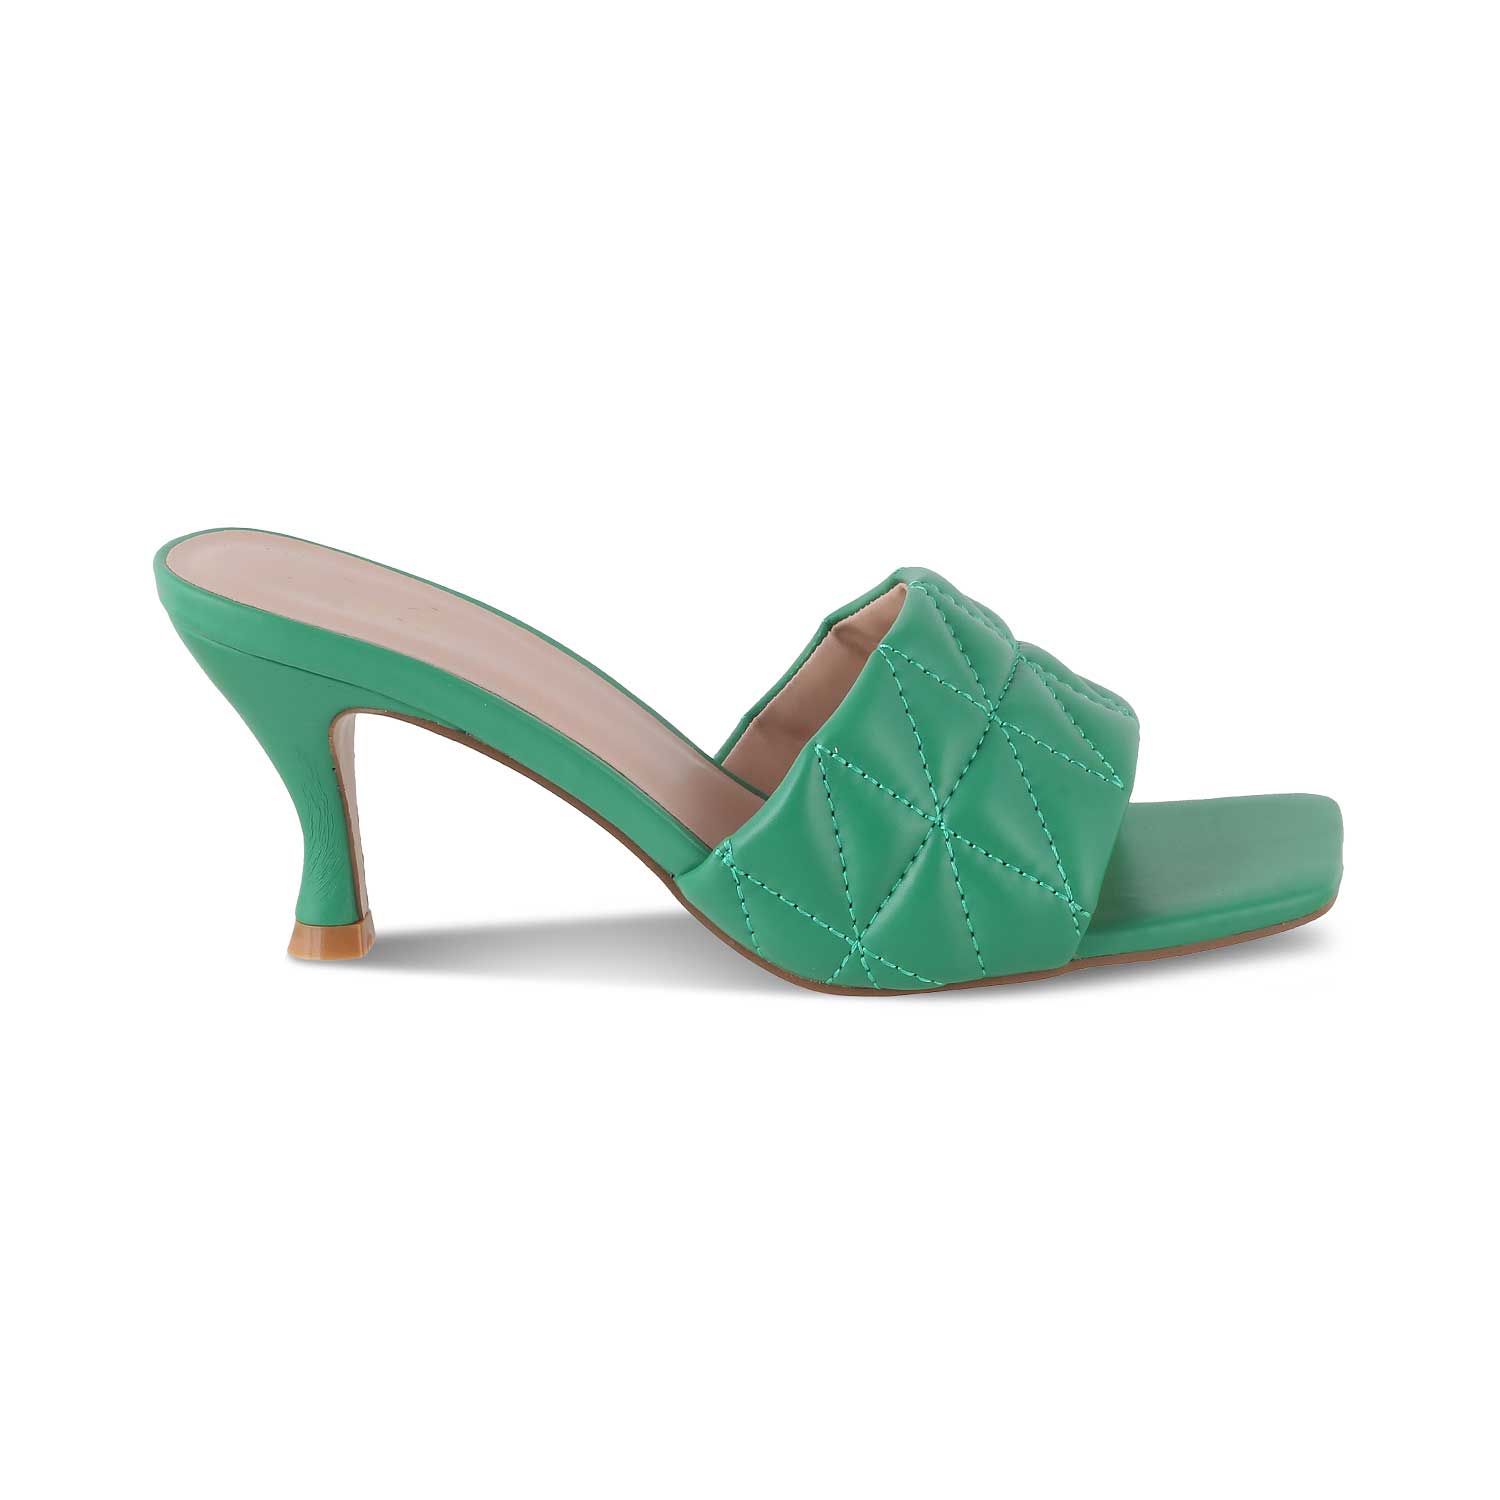 The Tuliza Green Women's Dress Heel Sandals Tresmode - Tresmode